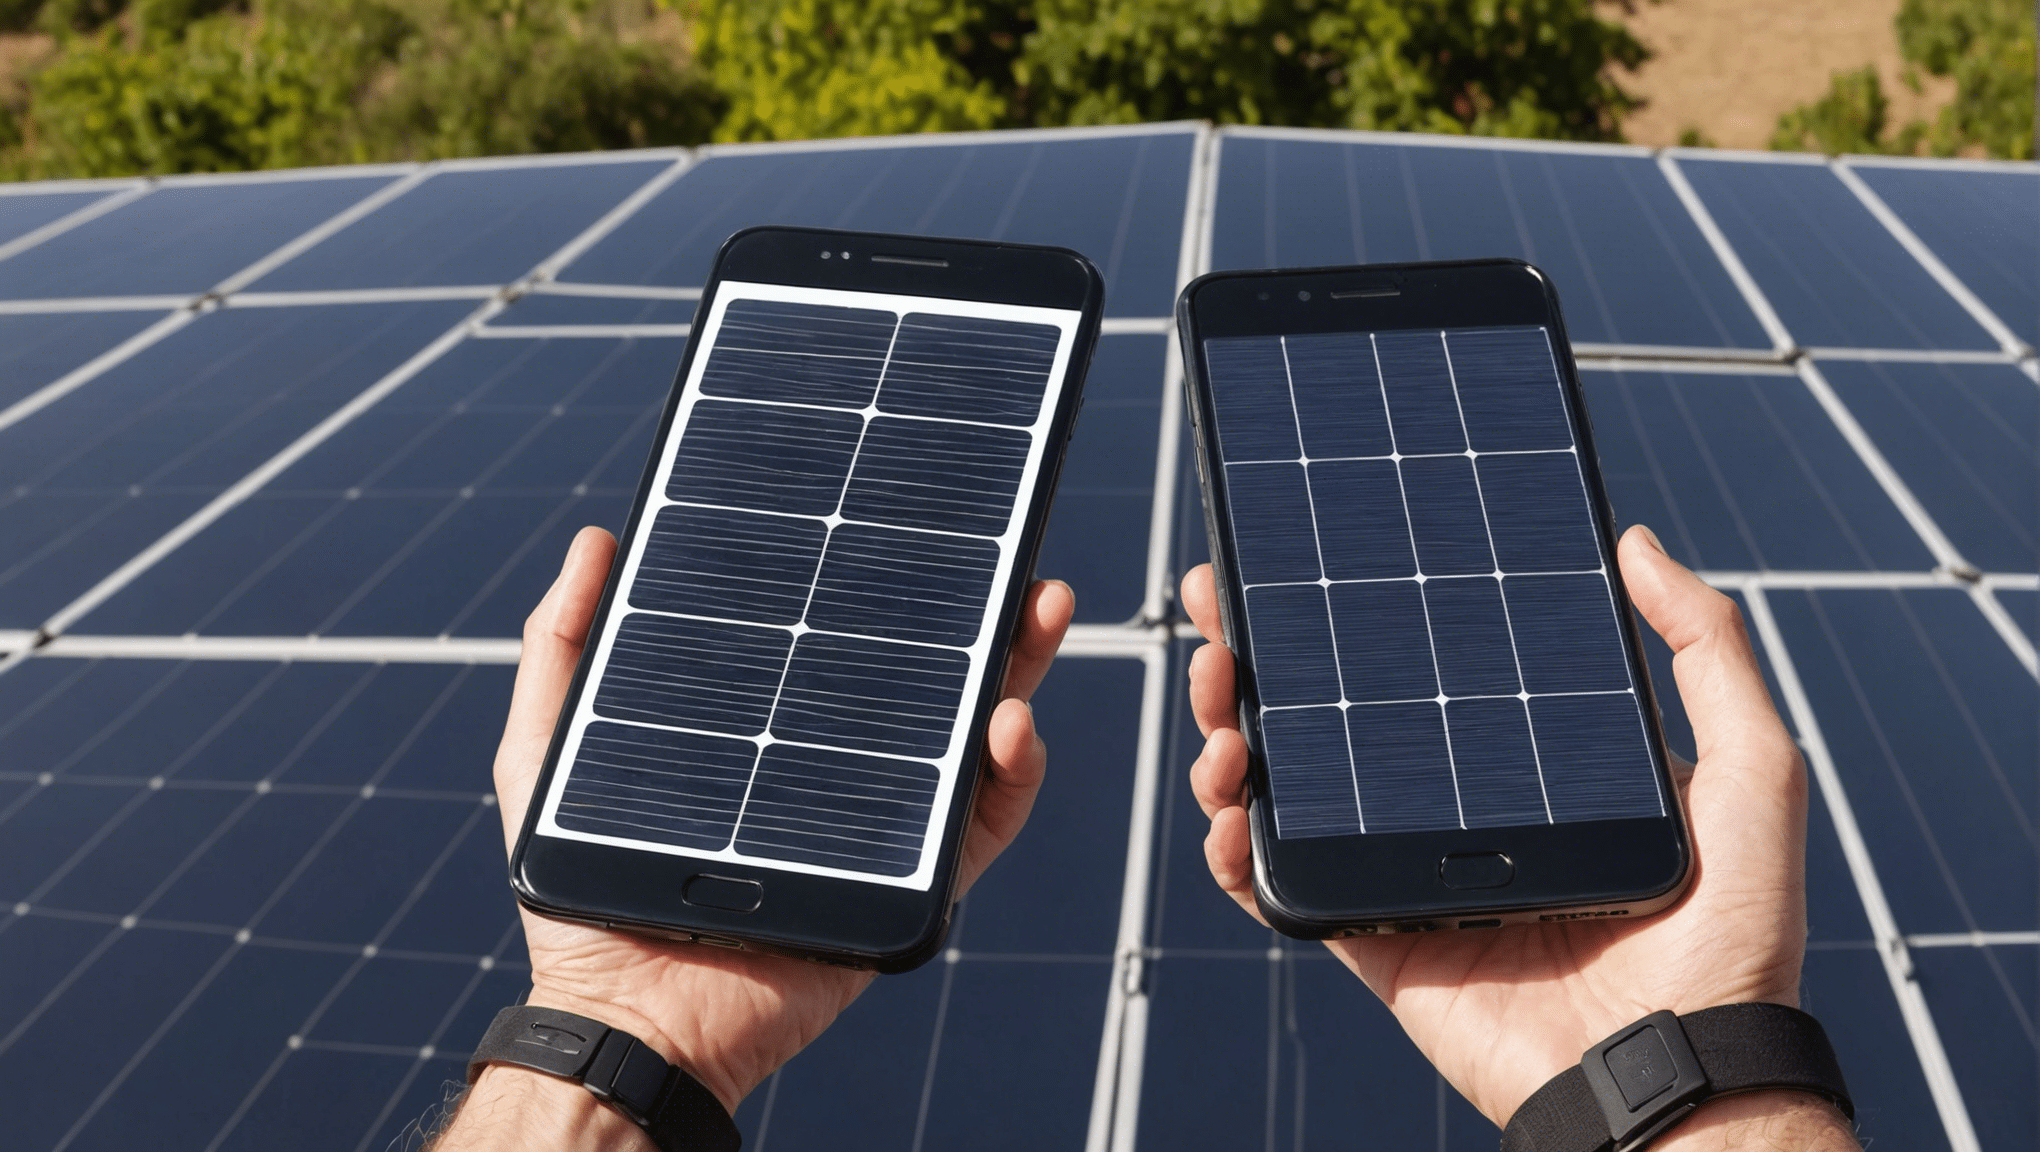 découvrez comment connecter facilement vos panneaux solaires à votre smartphone pour une utilisation pratique et écologique.